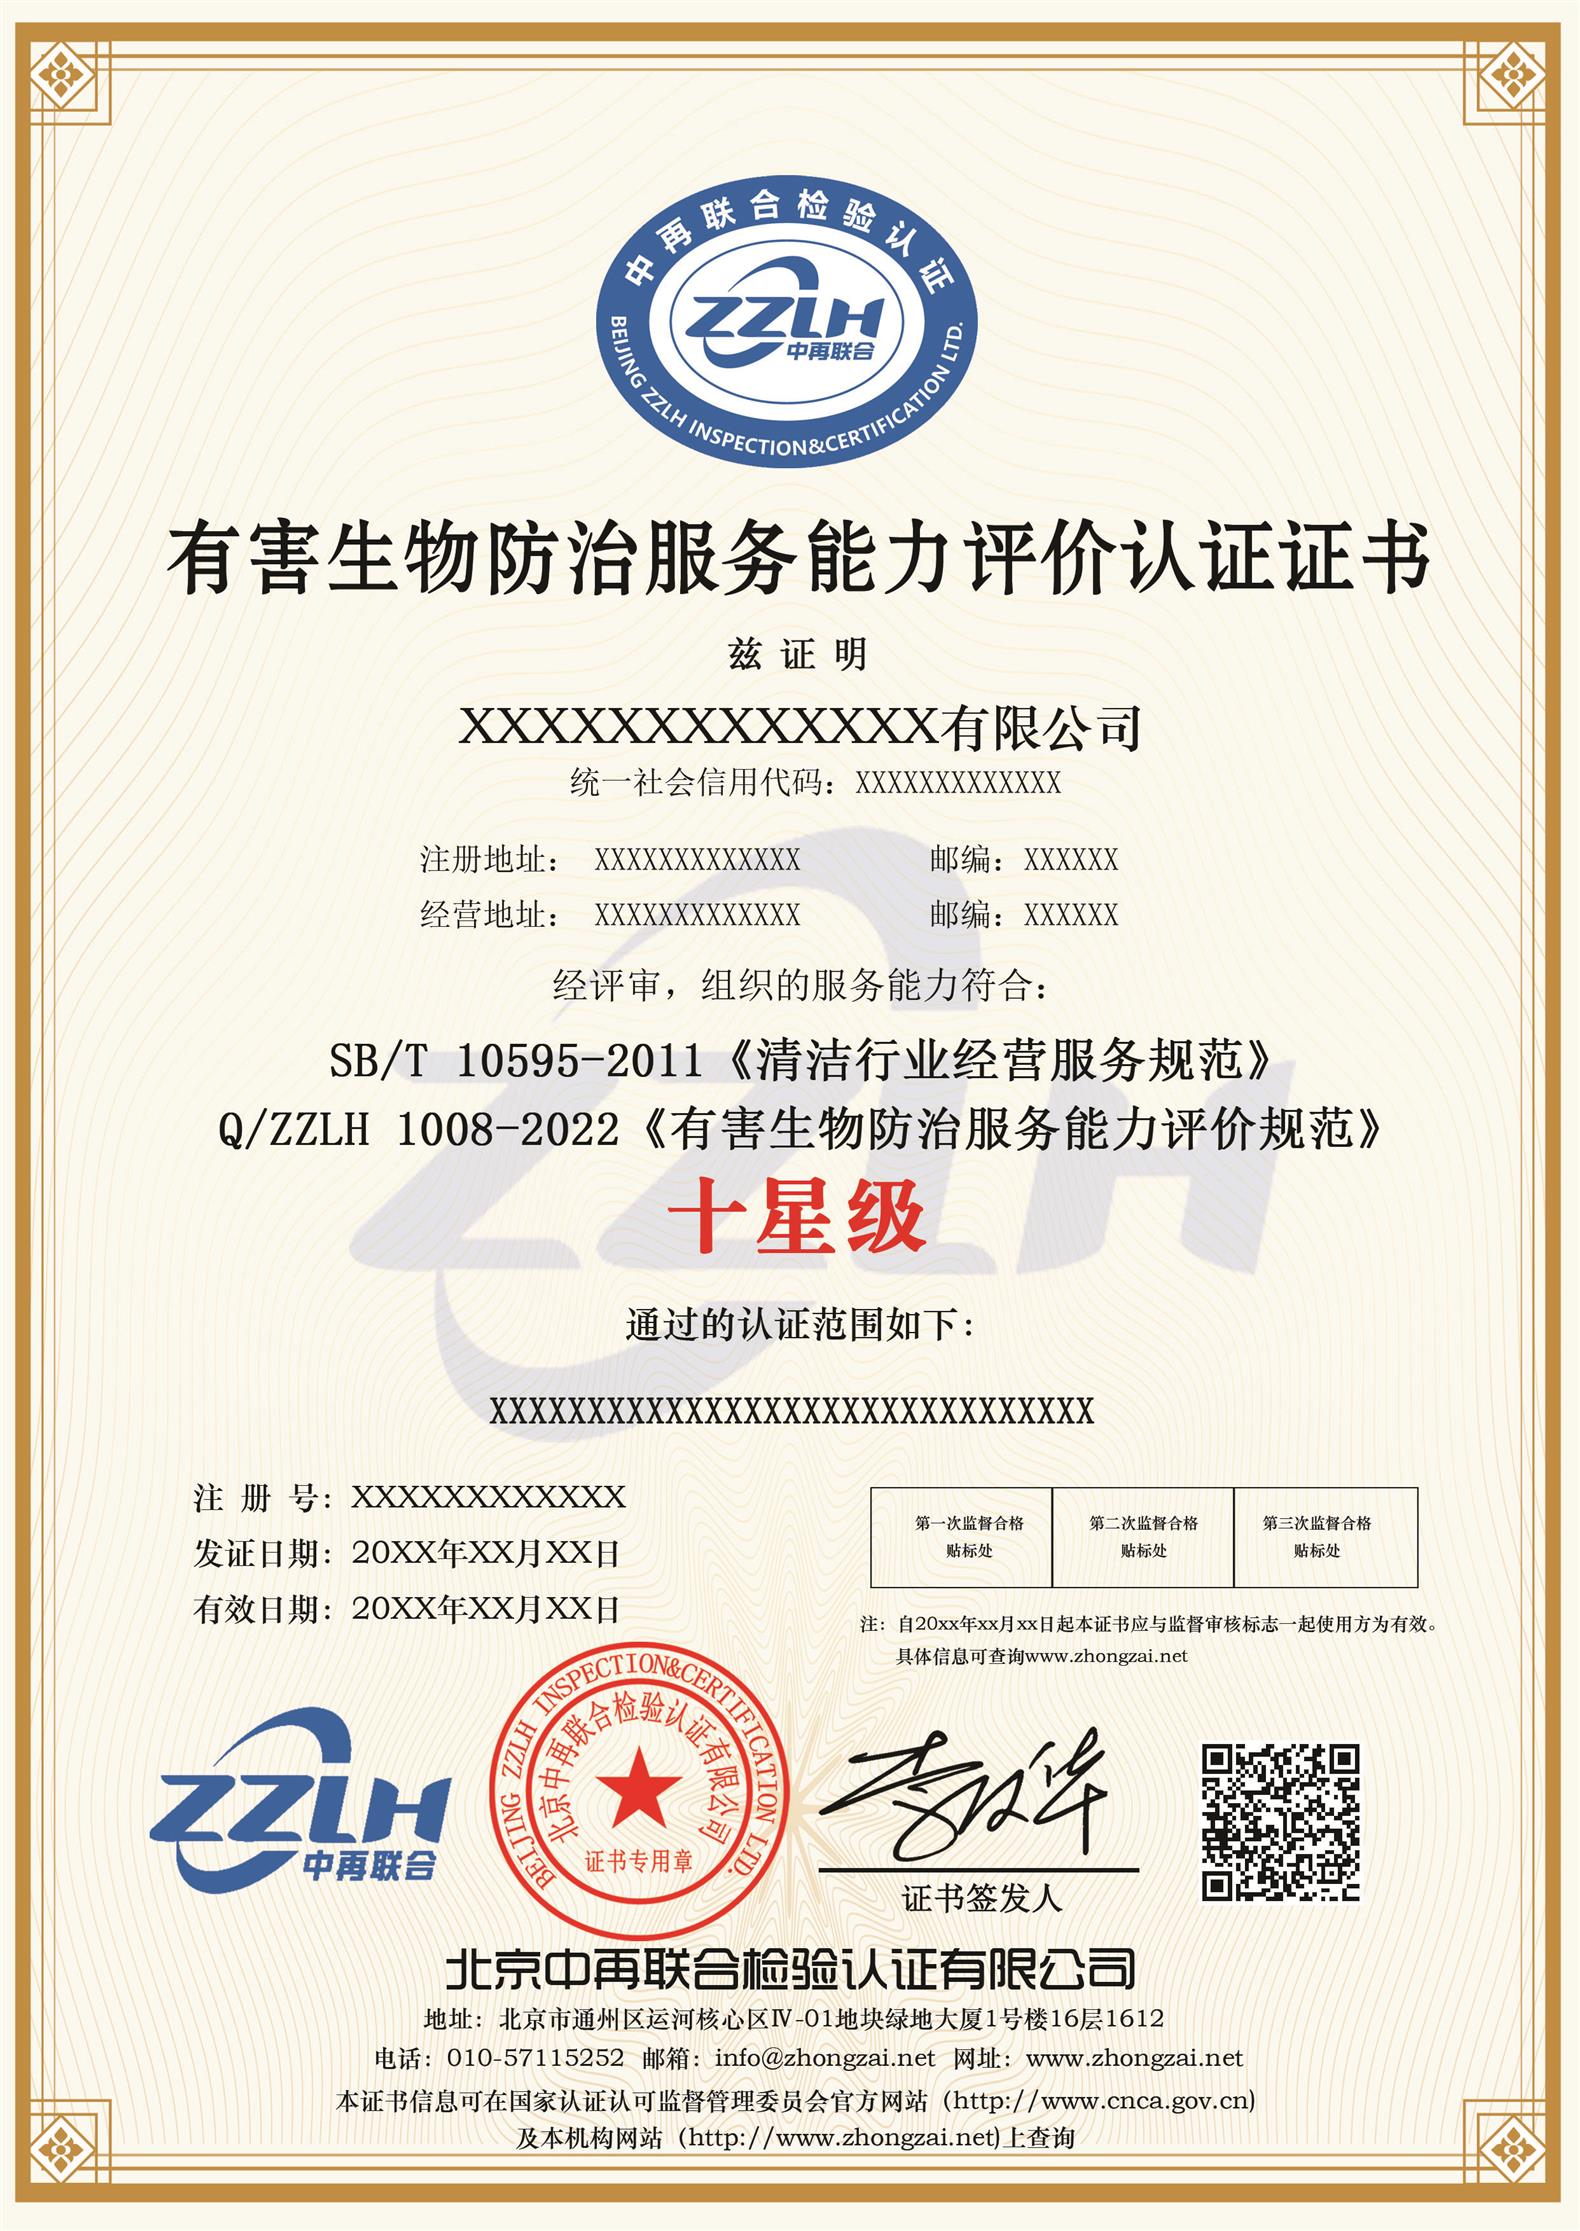 福建初级生鲜配送服务认证厂家 初级生鲜配送服务星级认证